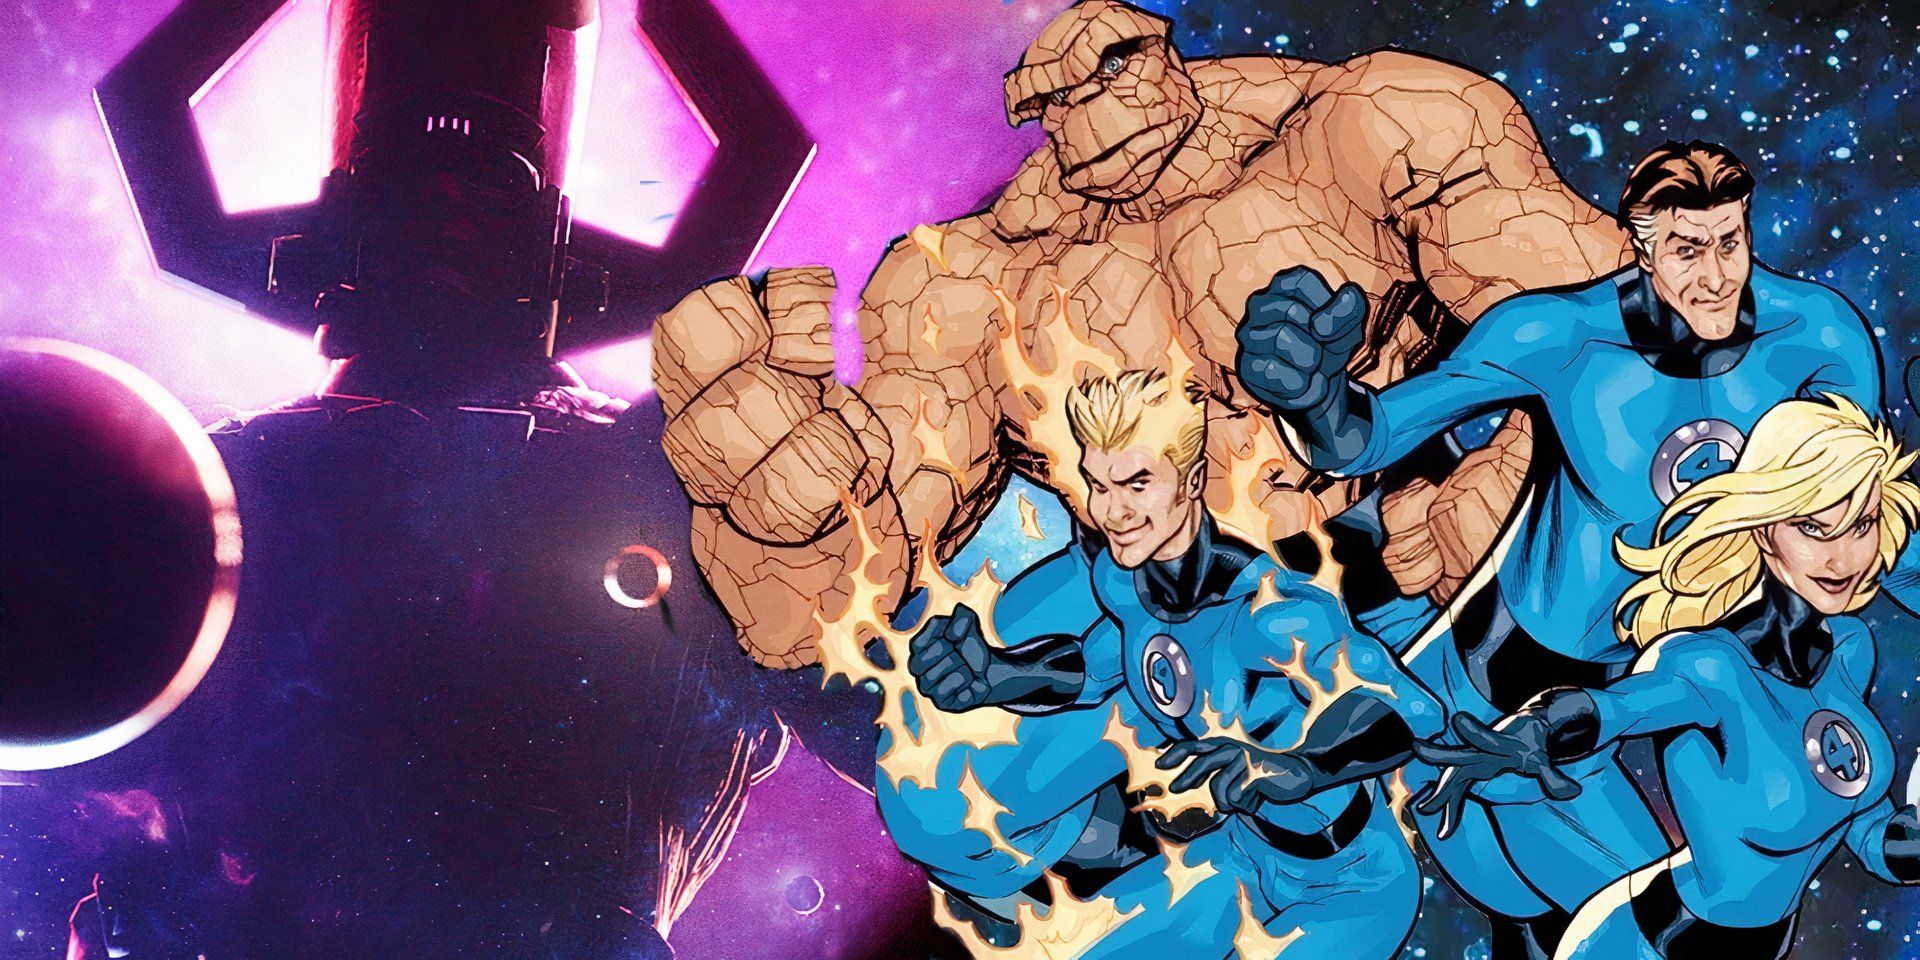 The Fantastic Four preparing to fight Galactus